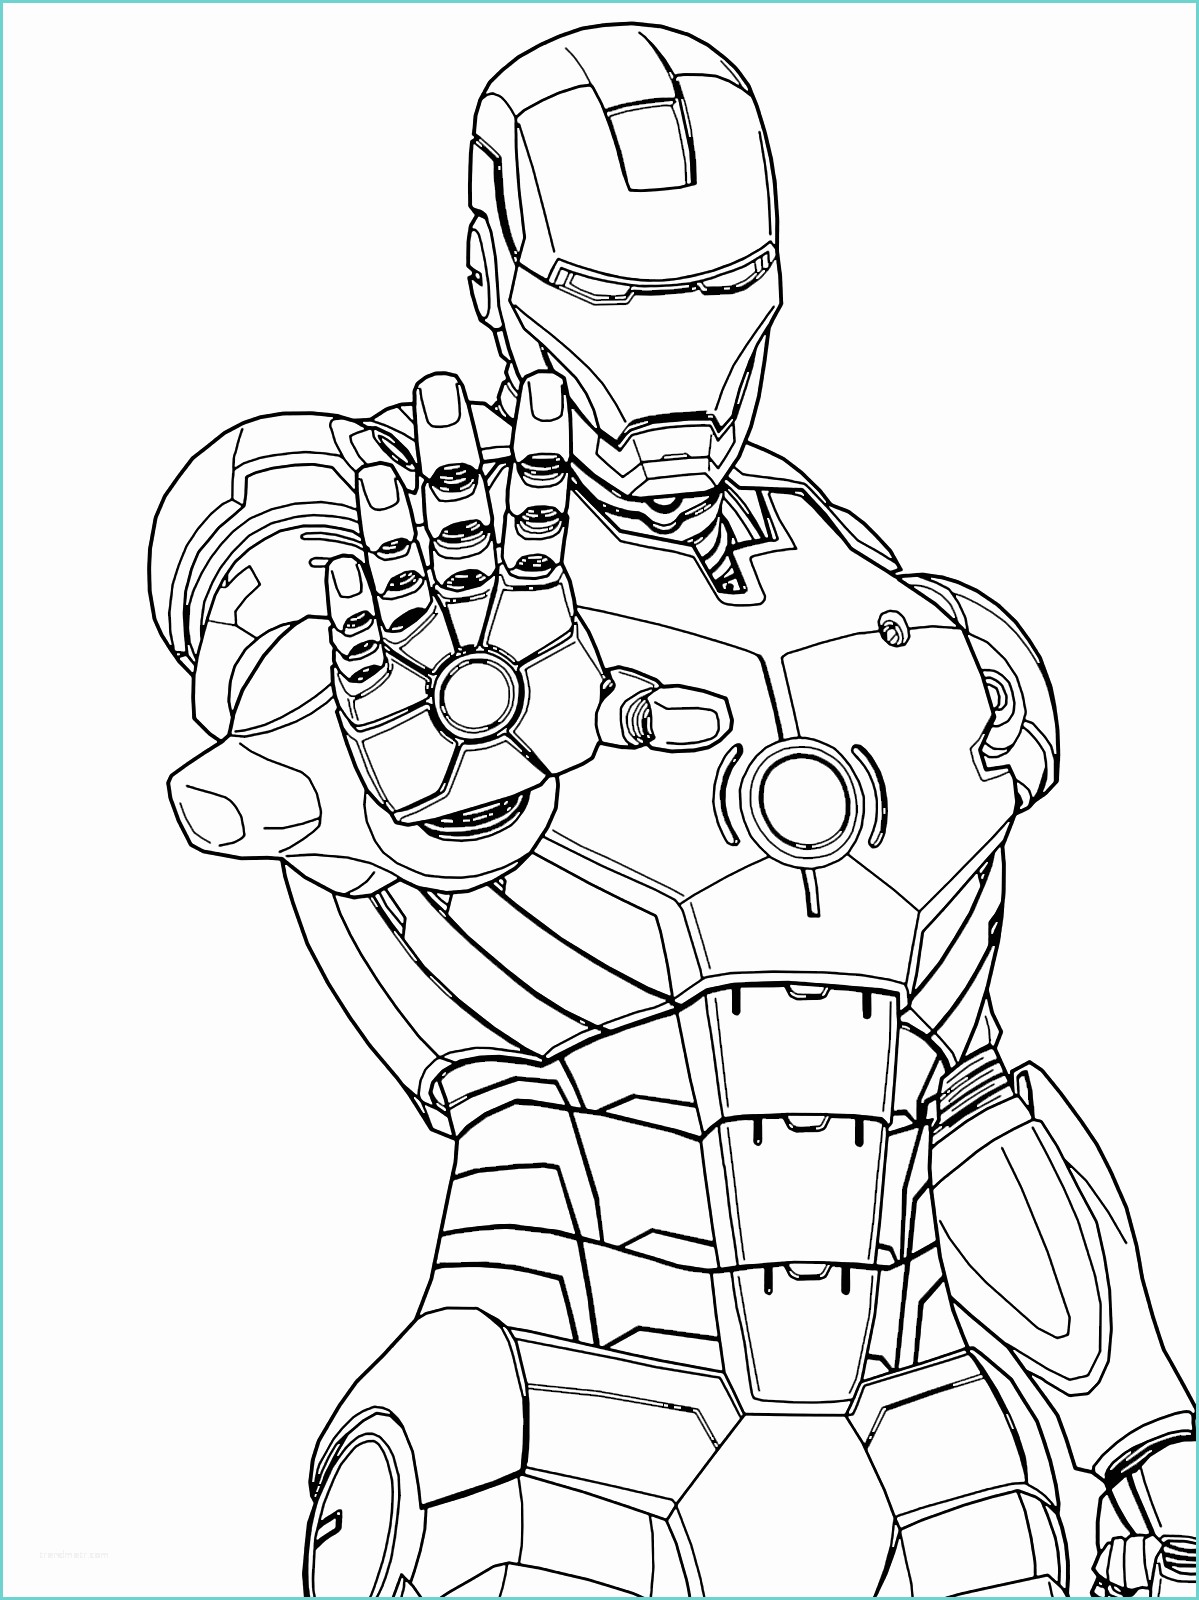 Immagini Di Spiderman Da Disegnare Iron Man Iron Man Pronto A Sparare Con Il Palmo Della Mano